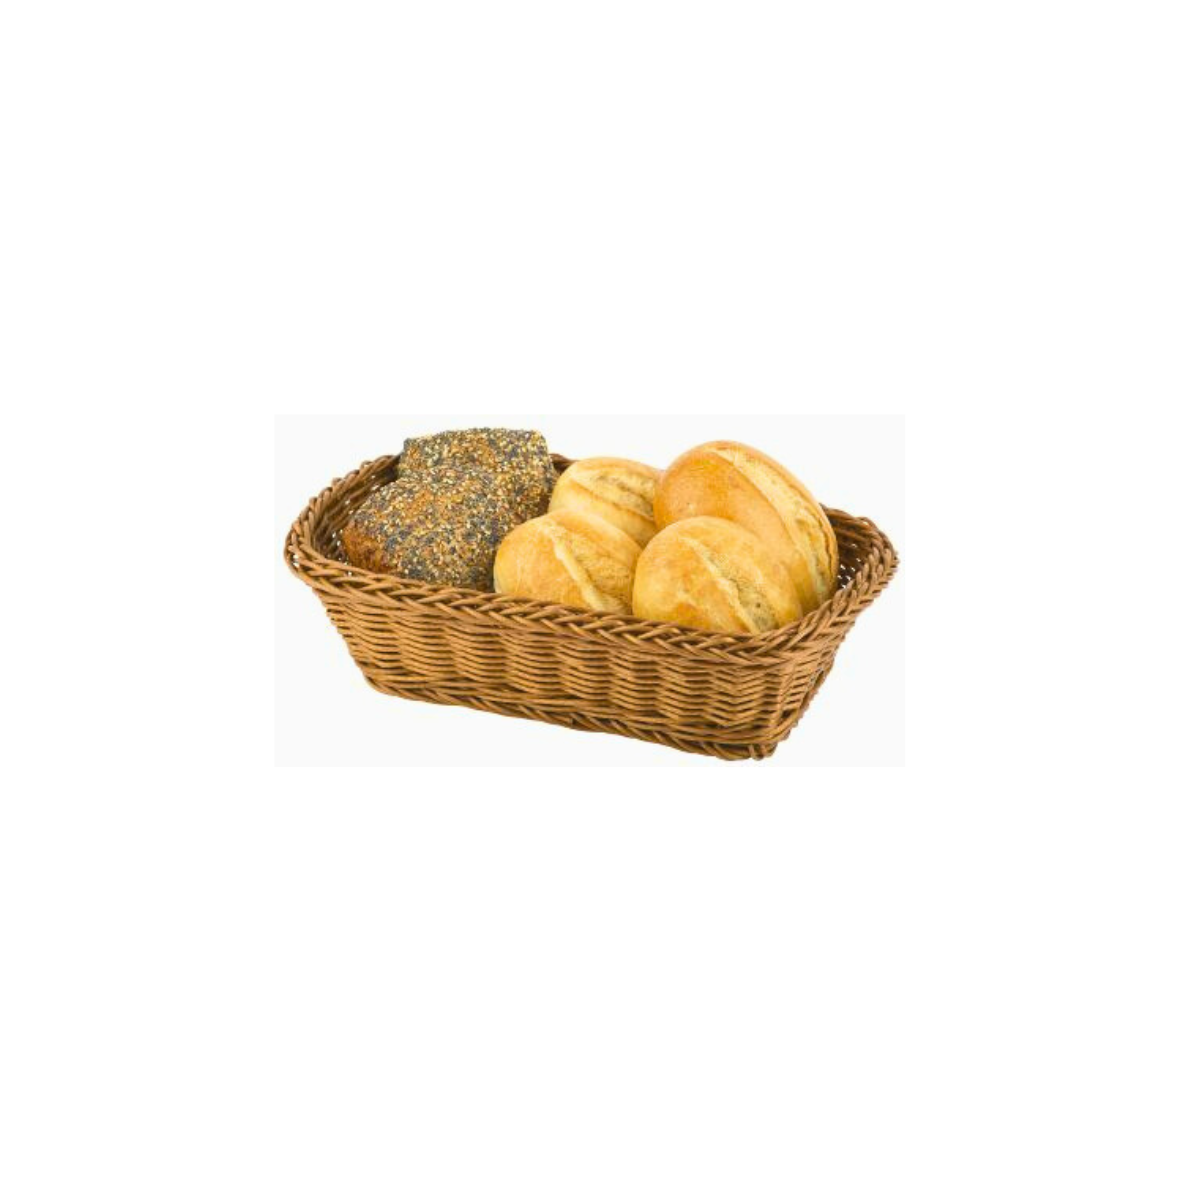 Brot- und Obstkorb rechteckig, braun, Poly-Rattan, 230 x 170 x 75 mm